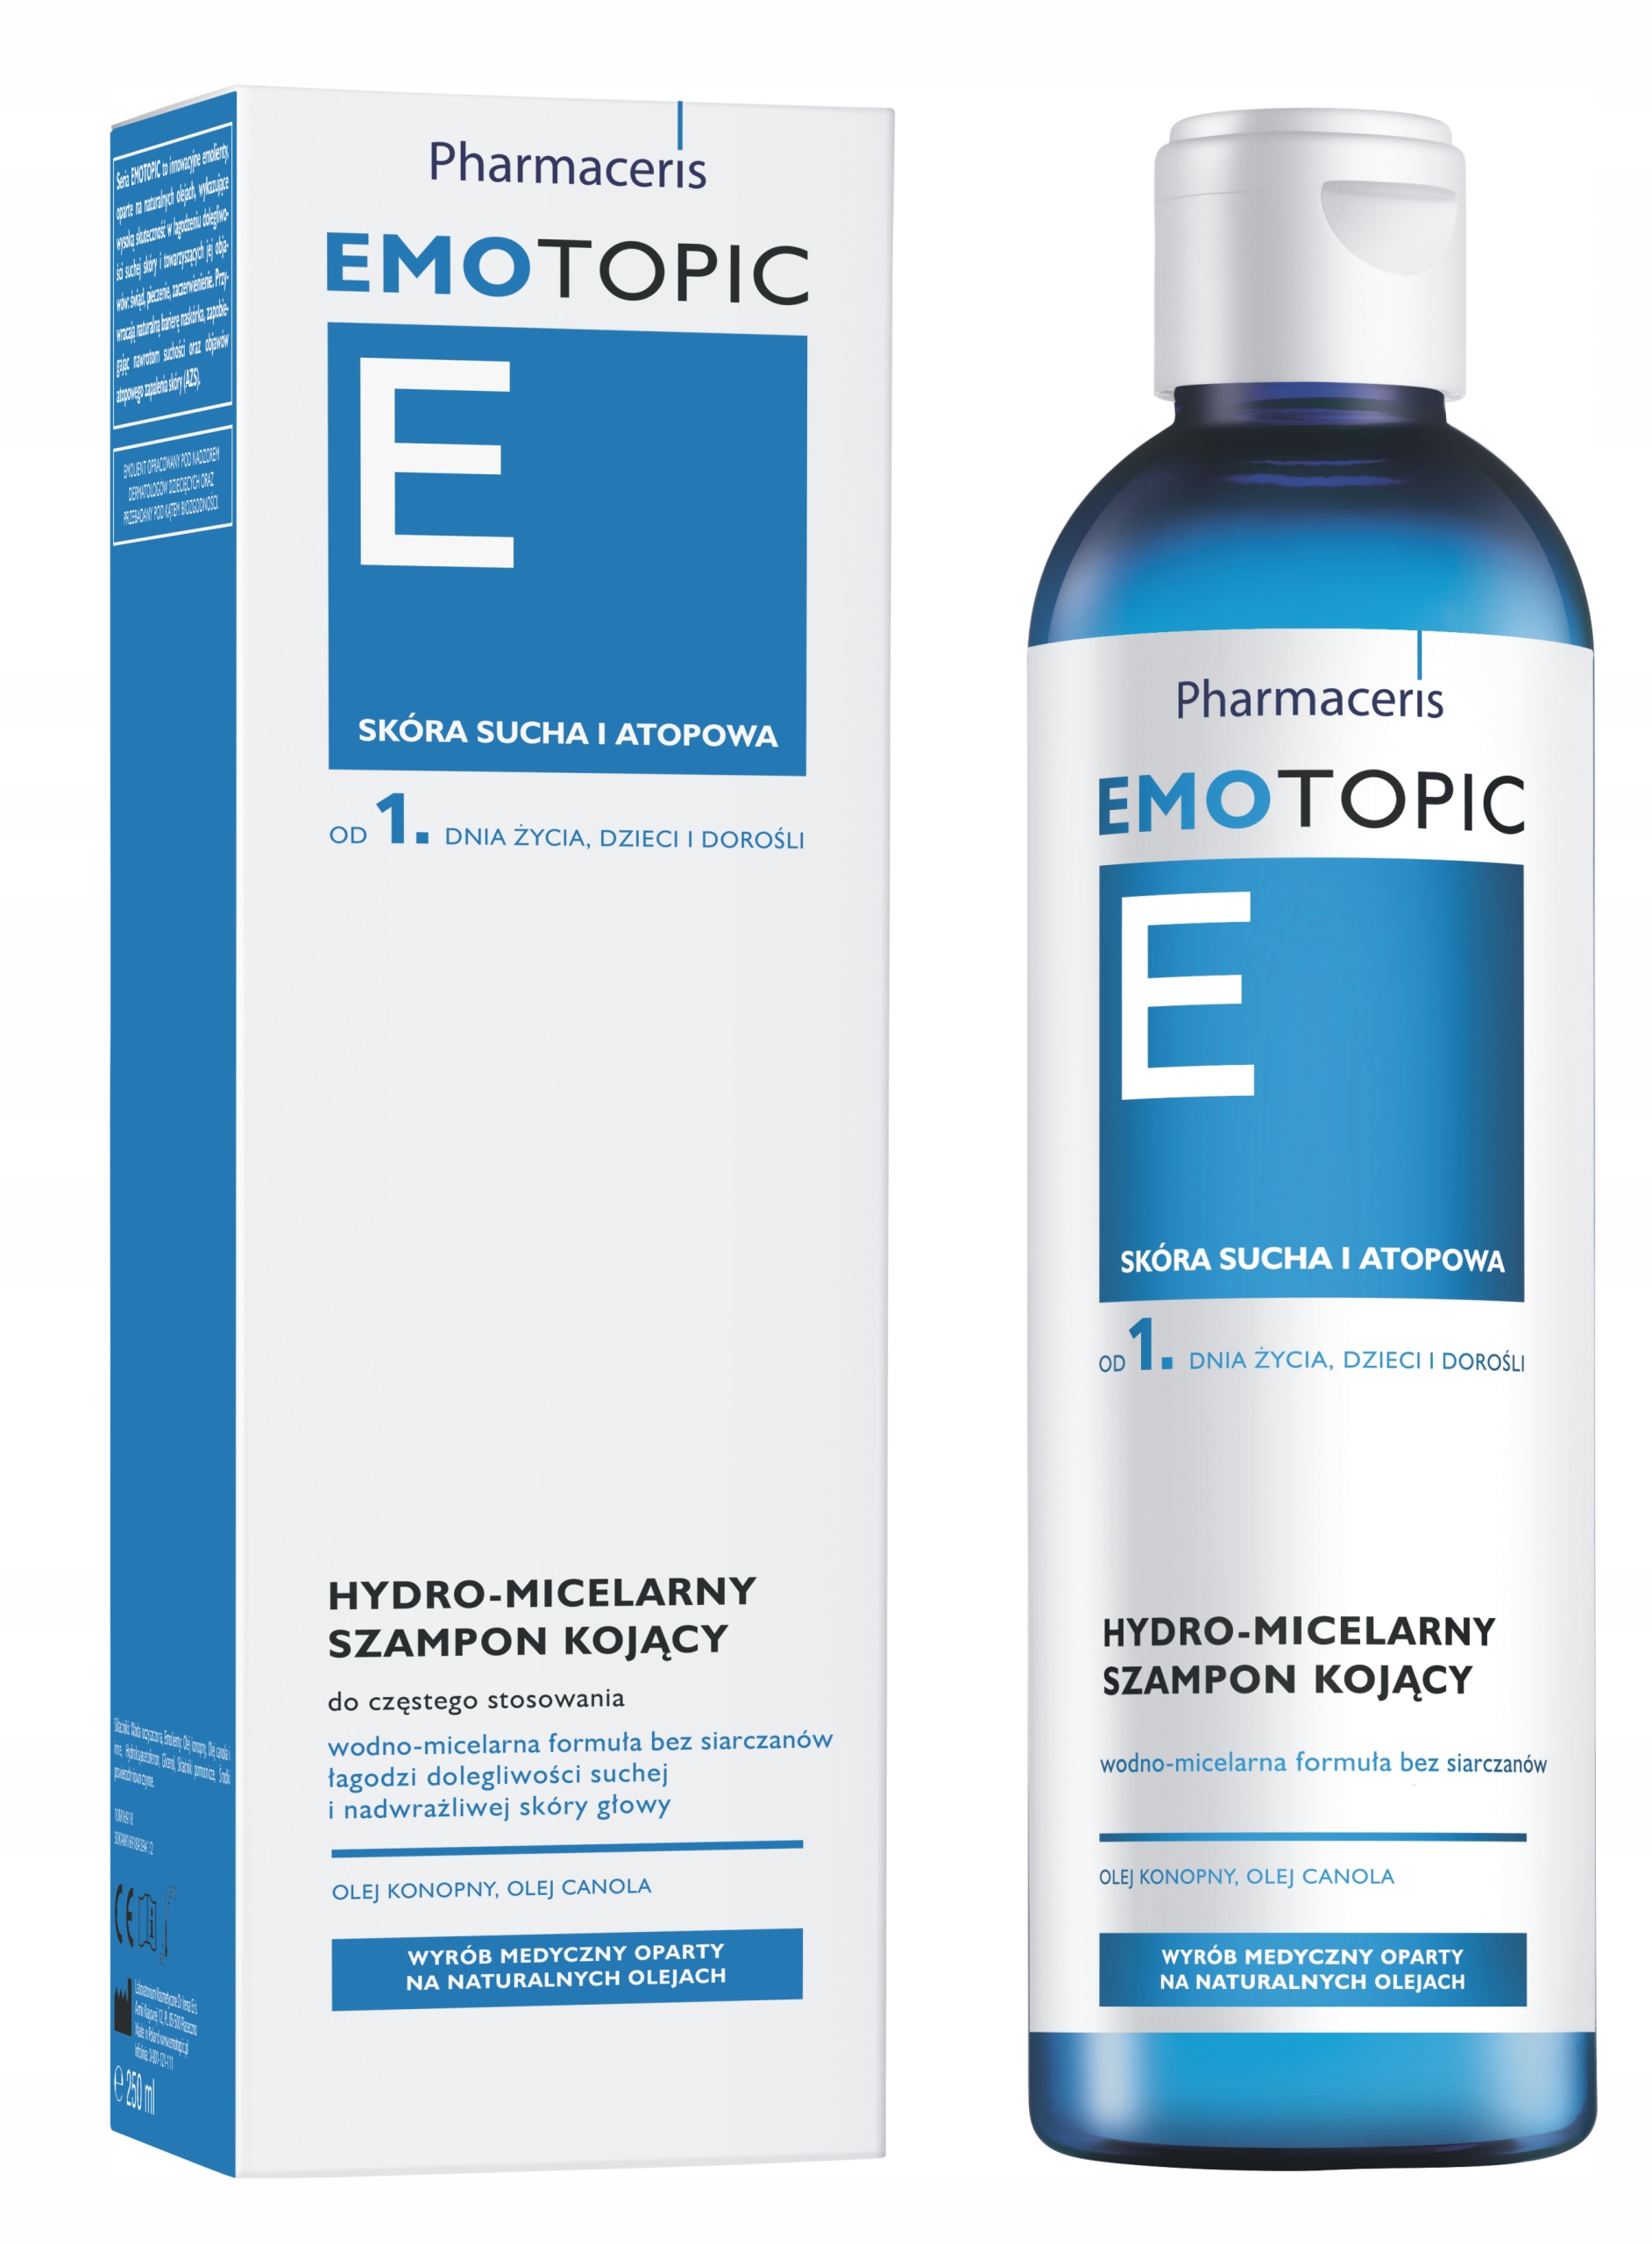 emotopic pharmaceris szampon dla dzieci